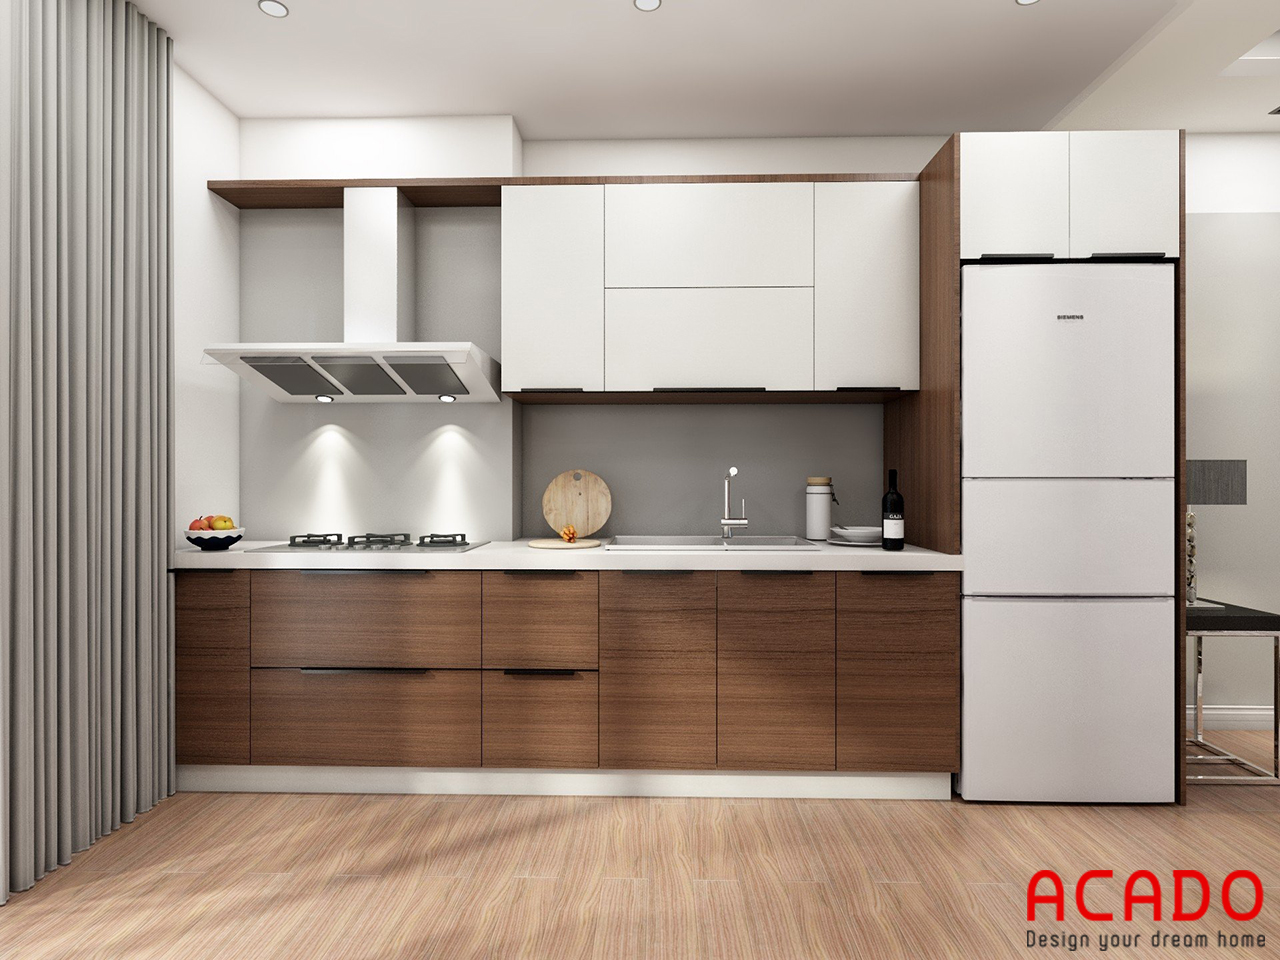 Tủ bếp thiết kế màu vân gỗ kết hợp với màu trắng hiện đại